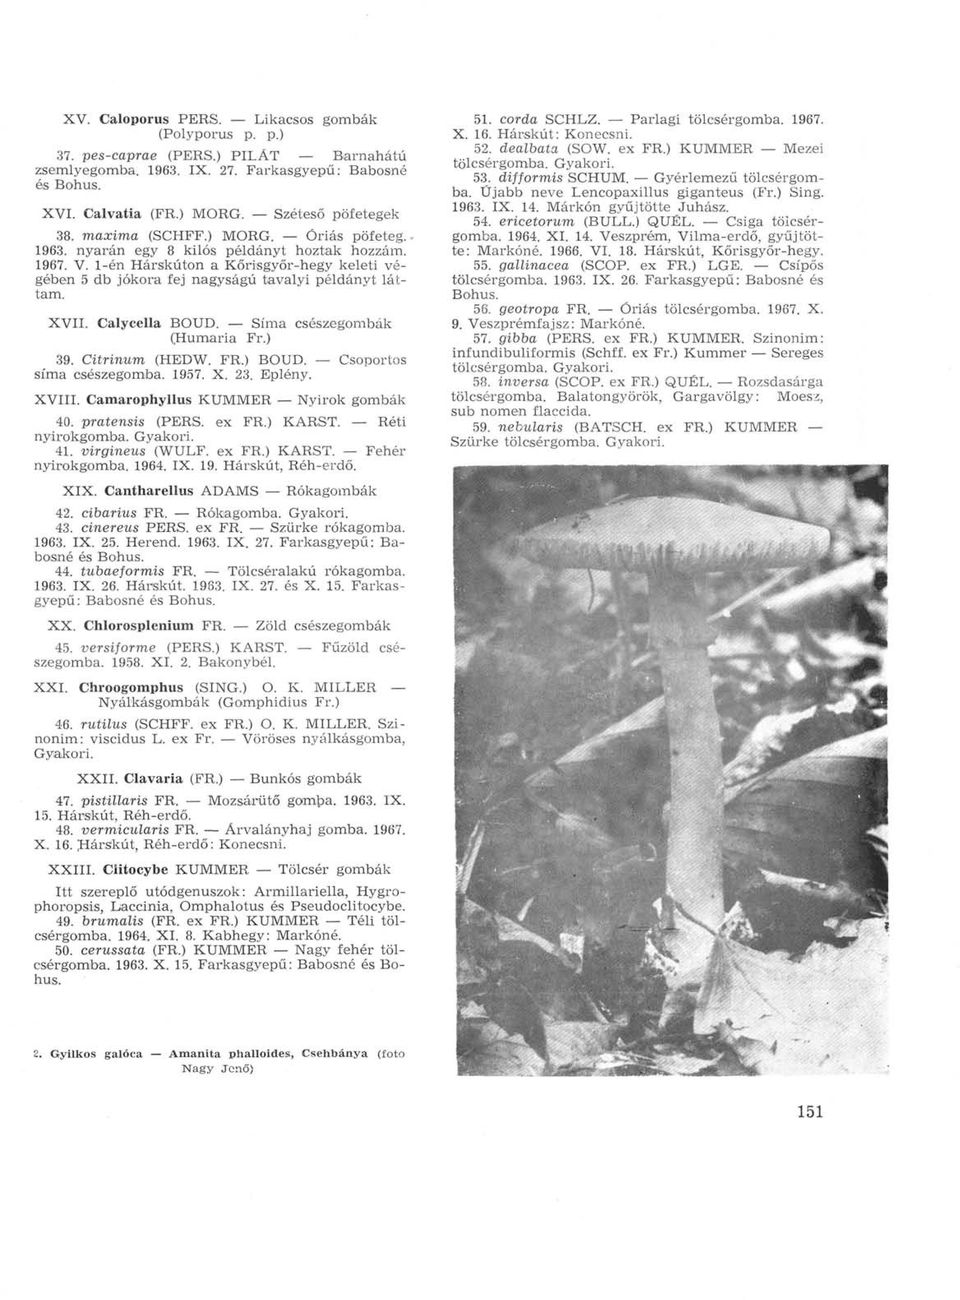 Calycella BOUD. Sima csészegombák (Humaria Fr.) 39. Citrinum (HEDW. FR.) BOUD. Csoportos sima csészegomba. 1957. X. 23. Eplény. XVIII. Camarophyllus KUMMER Nyirok gombák 40. pratensis (PERS. ex FR.